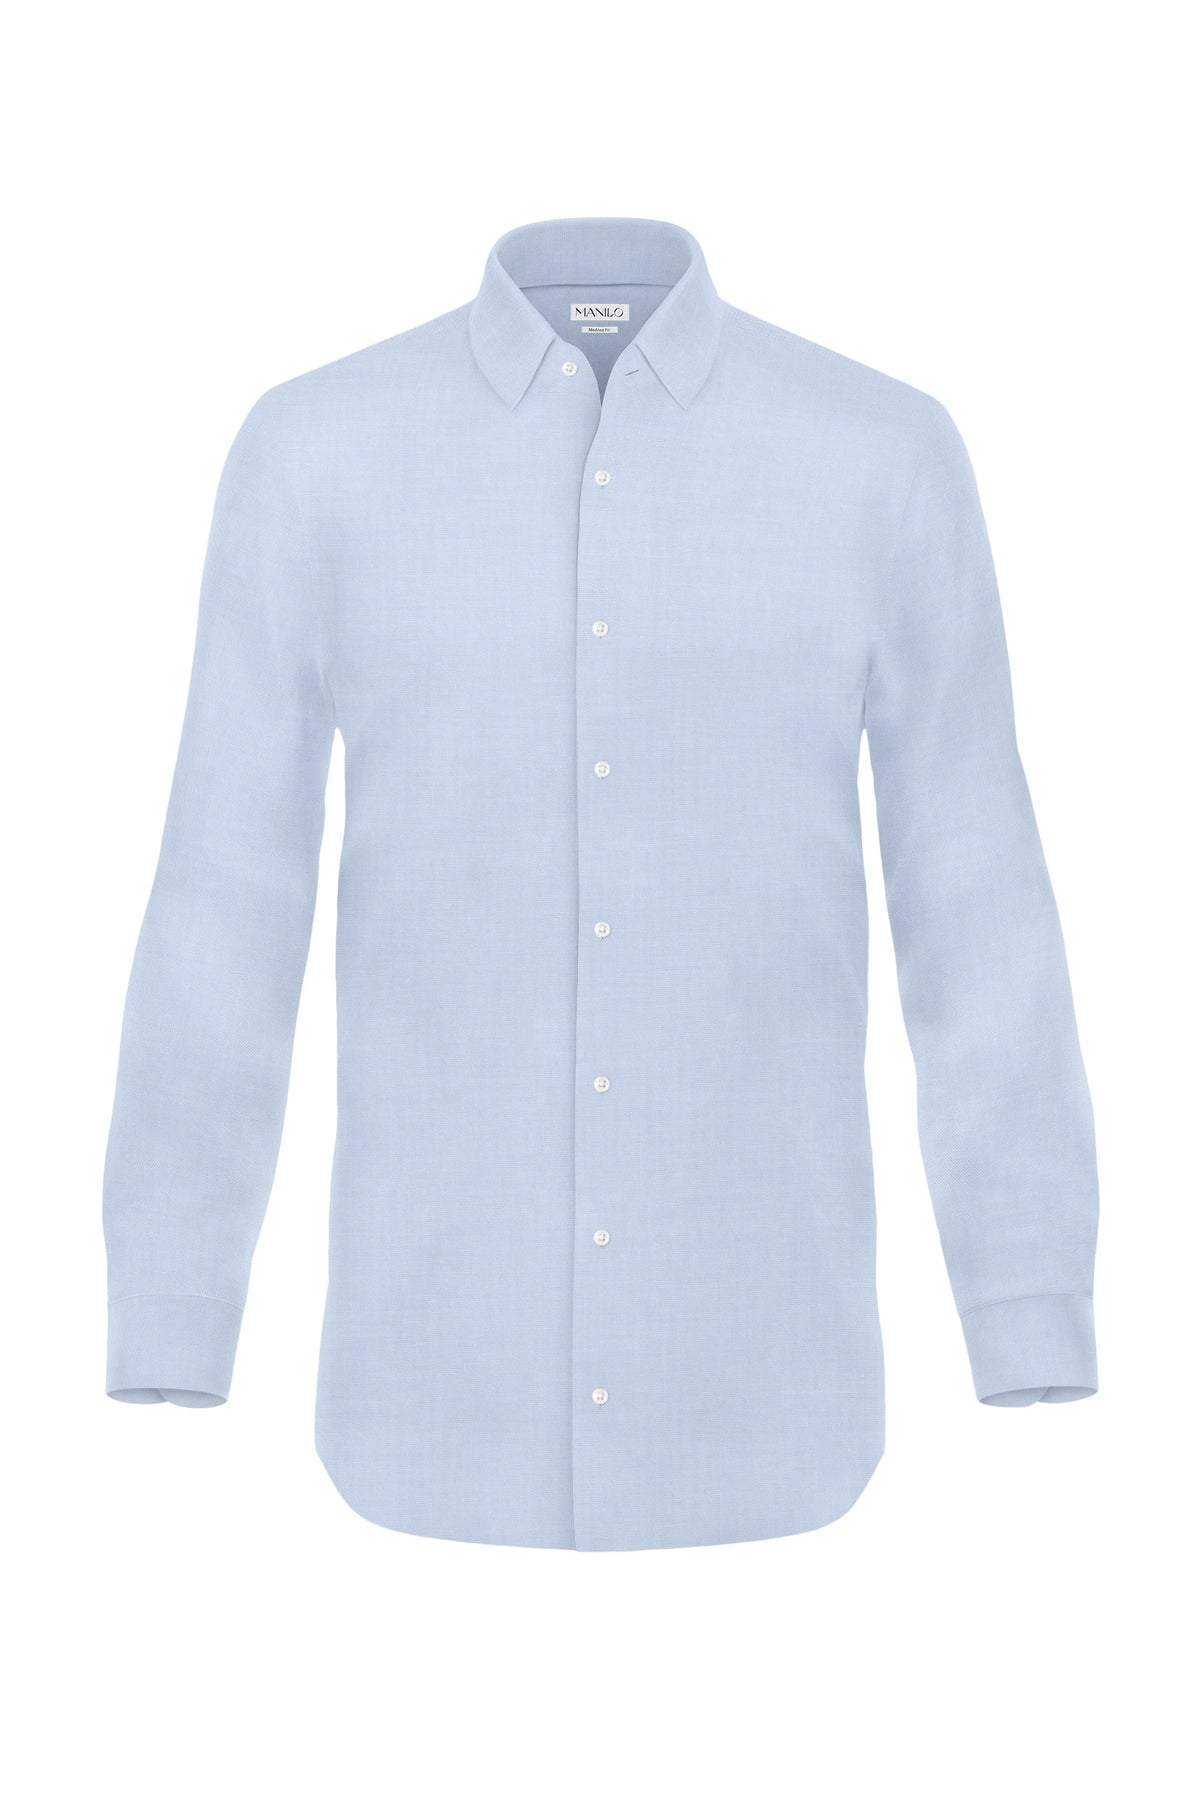 Hochwertiges Twill-Hemd Hellblau Modern Fit (gerade geschnitten)